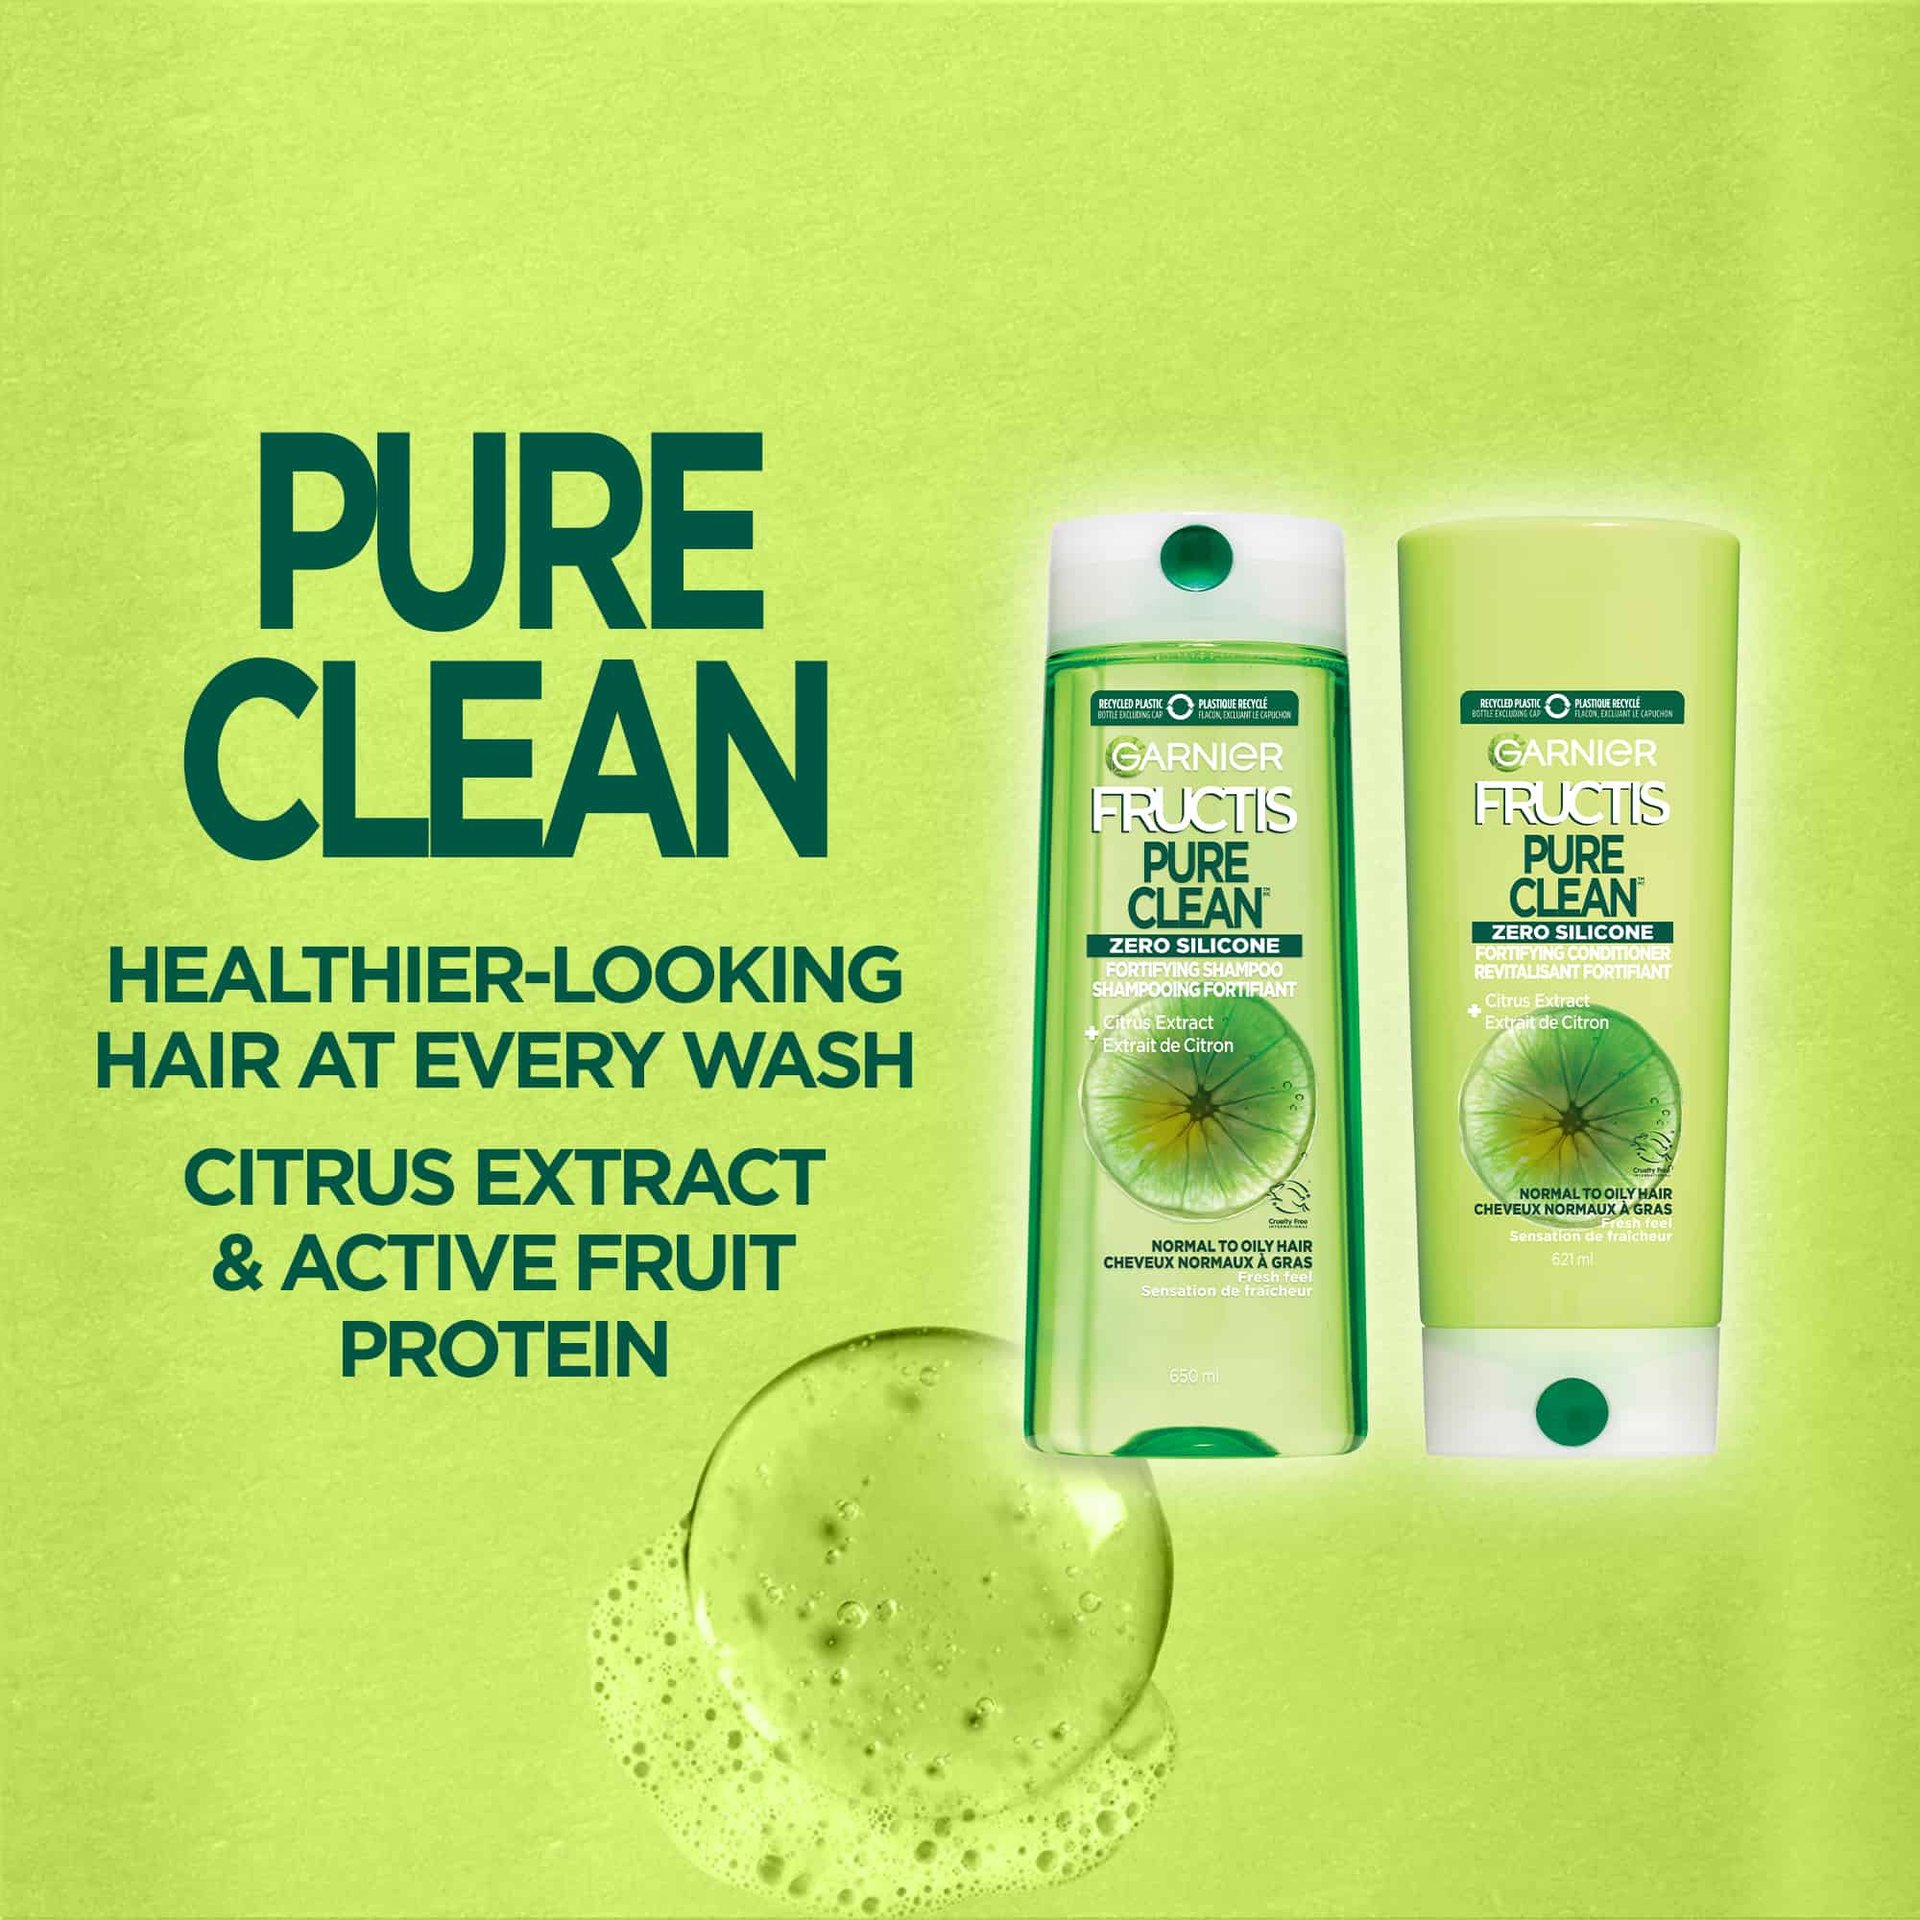 GAR_WEB_BAN Fructis Pure Clean_1_EN